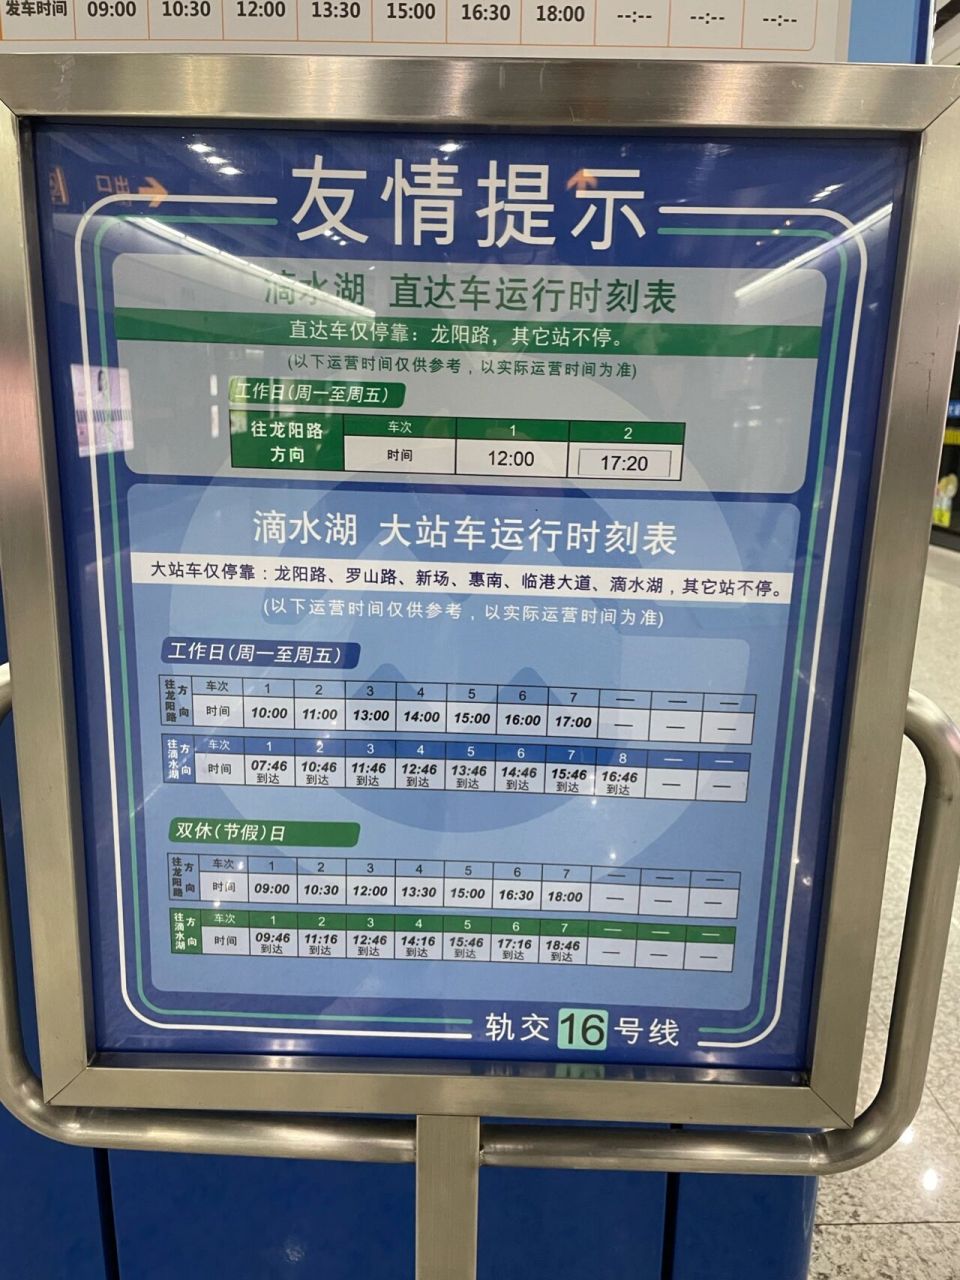 16号线大站车时刻表图片